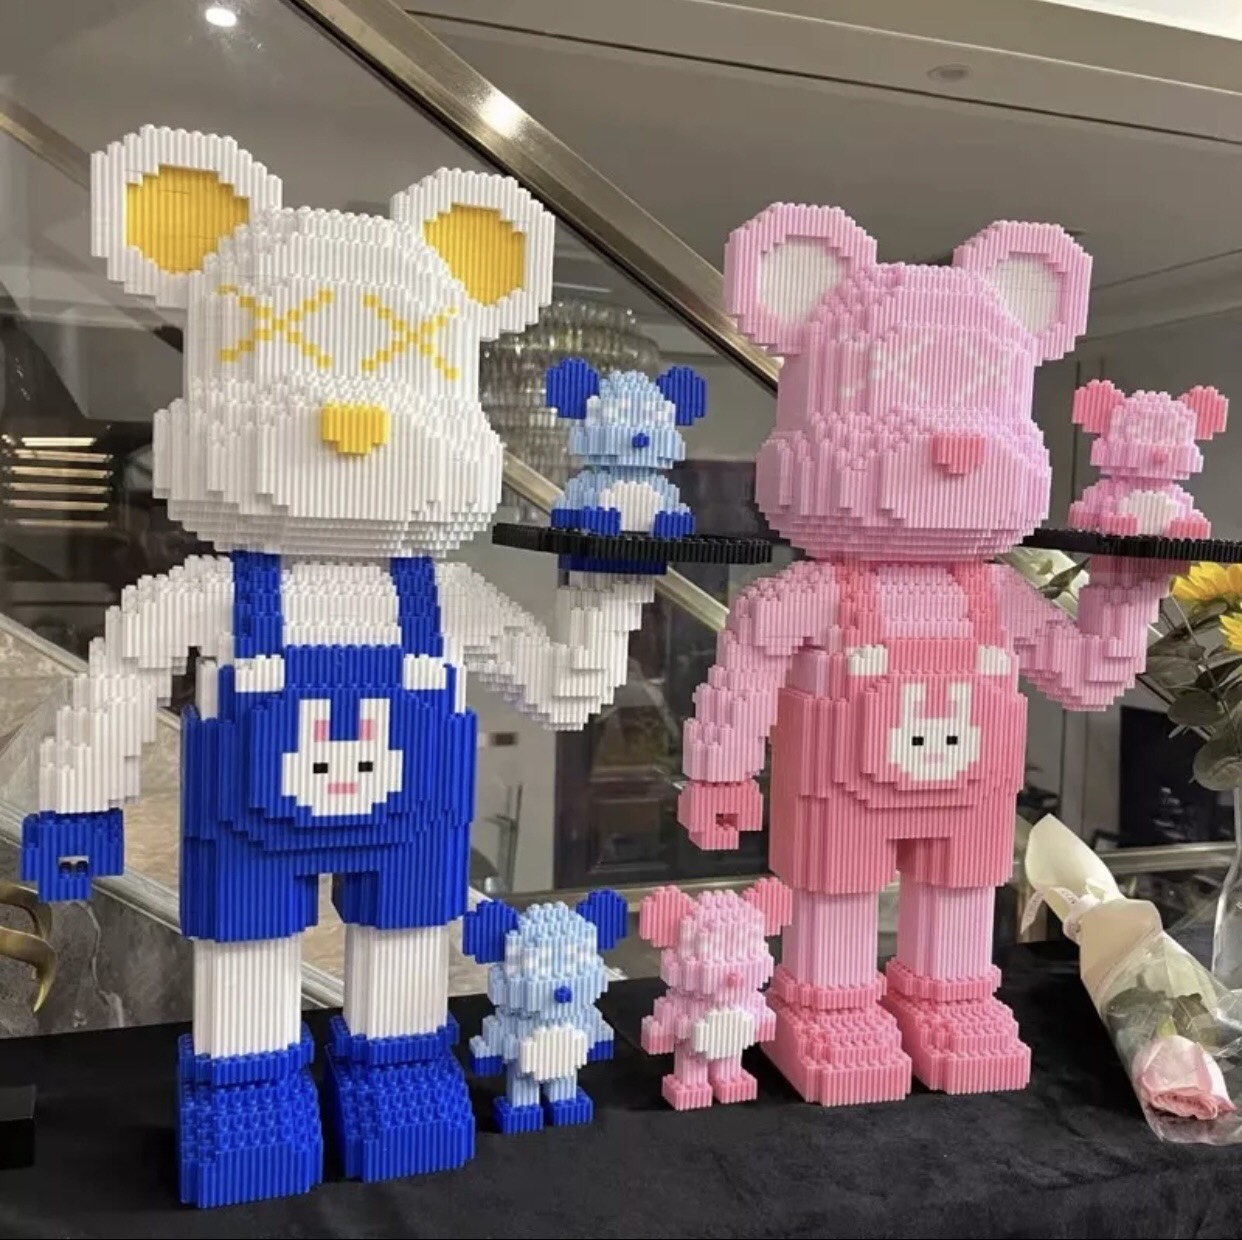 [Tặng búa] Bộ Lắp Ráp Lego Mô Hình Gấu BEARBRICK Bồi Bàn (Gồm 2 con nhỏ). Chất liệu nhựa ABS an toàn